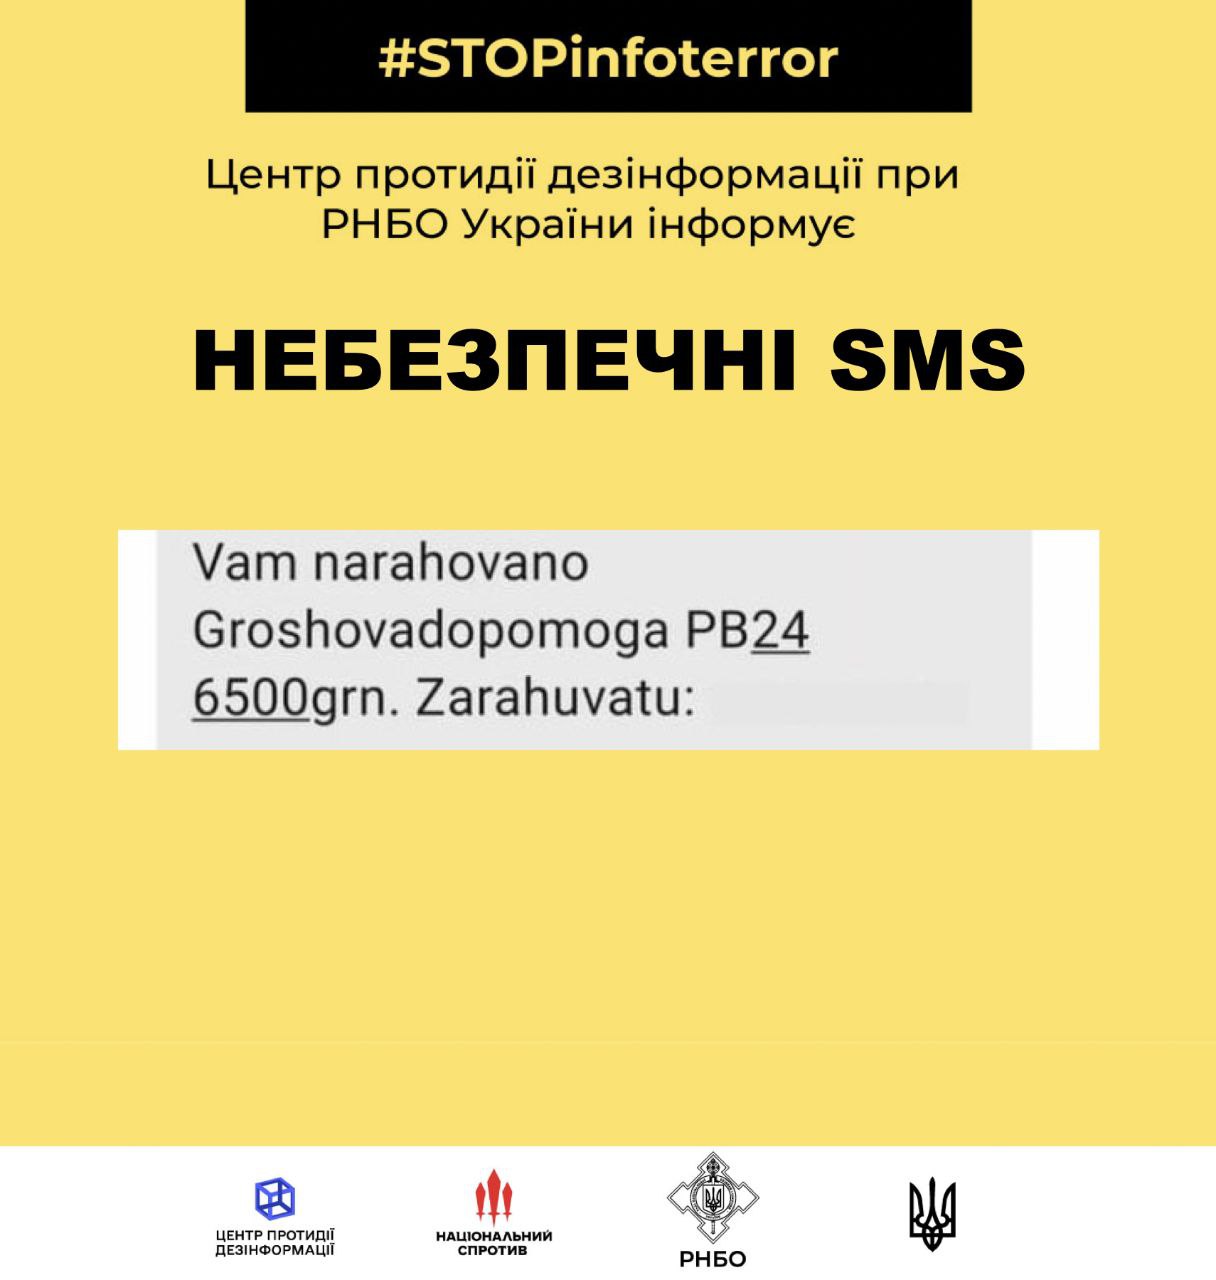 Українцям приходить небезпечна SMS-розсилка про нарахування грошей